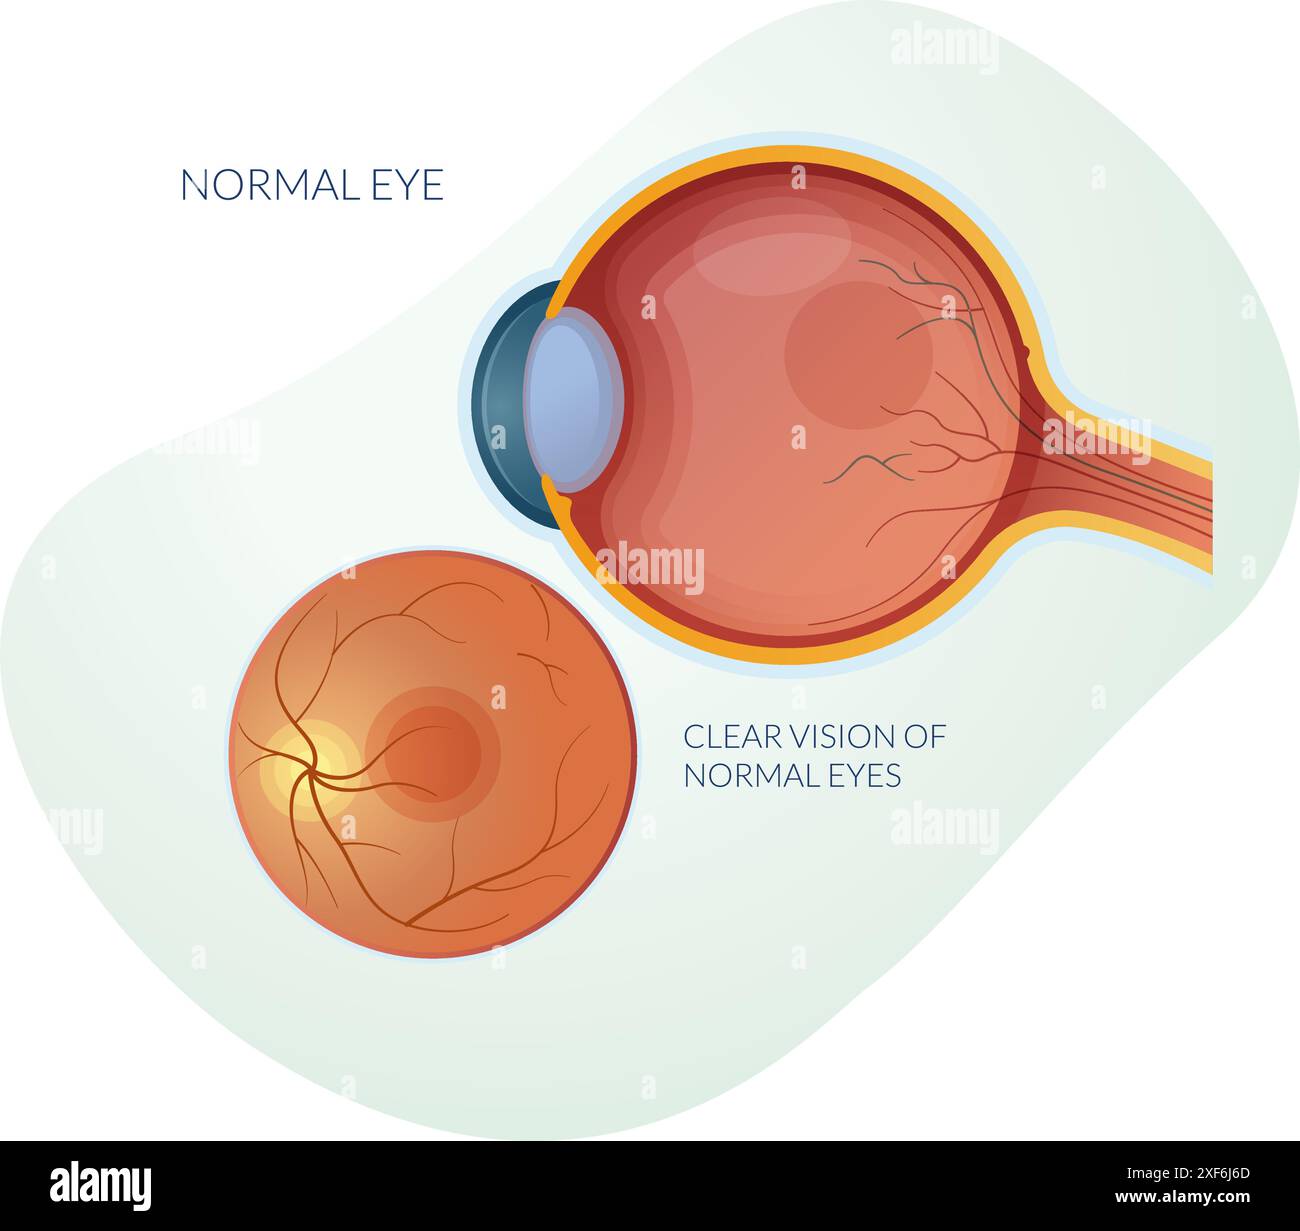 Occhio normale senza degenerazione maculare asciutta o bagnata - illustrazione di scorta come file EPS 10 Illustrazione Vettoriale